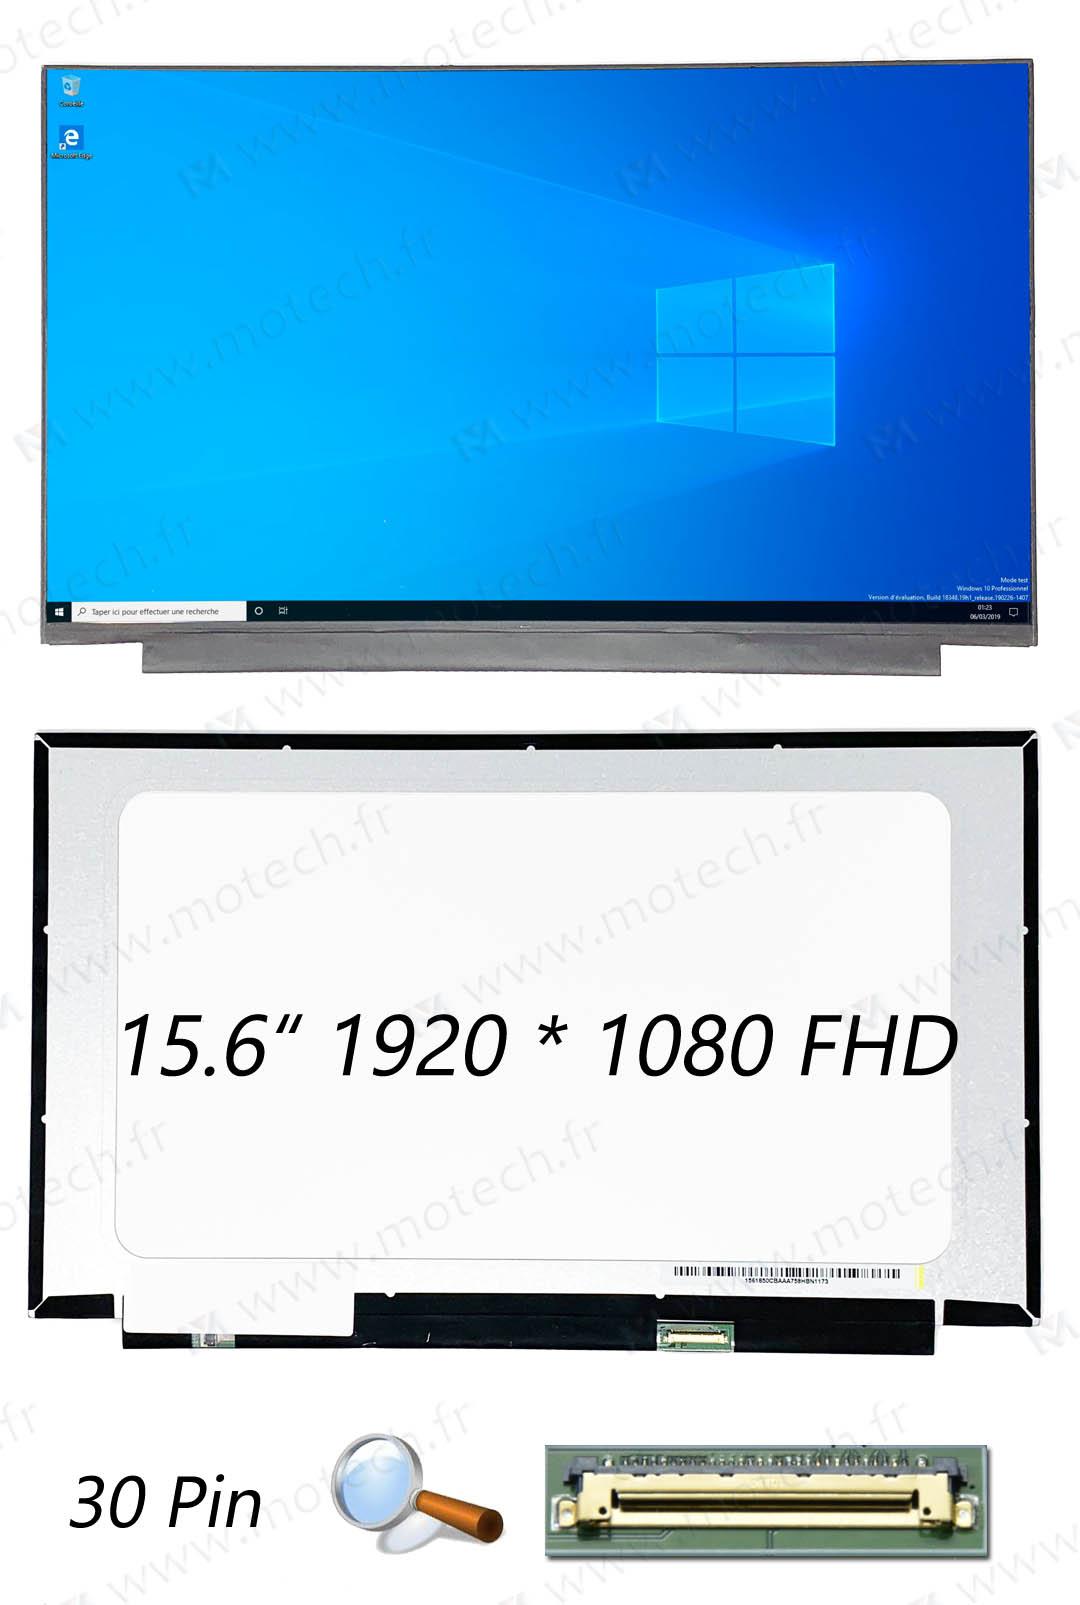 华硕 Asus S530UF 屏幕, 华硕 Asus S530UF 显示屏, 华硕 Asus S530UF 液晶屏, 华硕 Asus S530UF 显示器, 华硕 Asus S530UF 液晶屏幕, 华硕 Asus S530UF LCD,